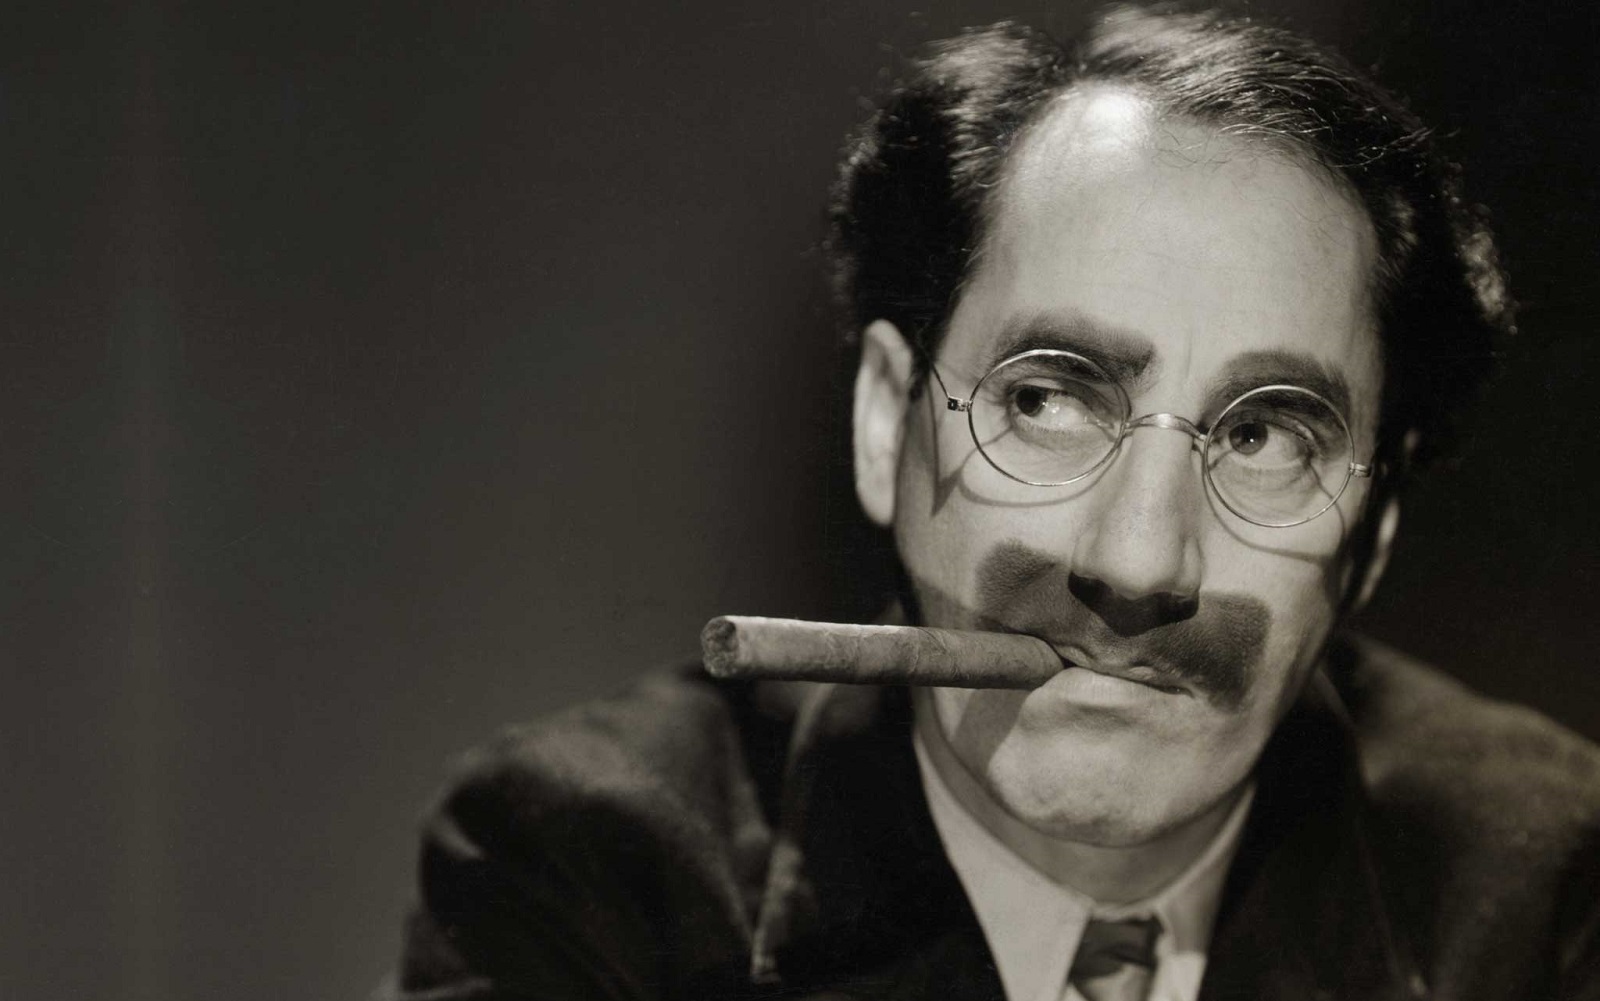 Le migliori frasi, citazioni e aforismi più divertenti di Groucho Marx